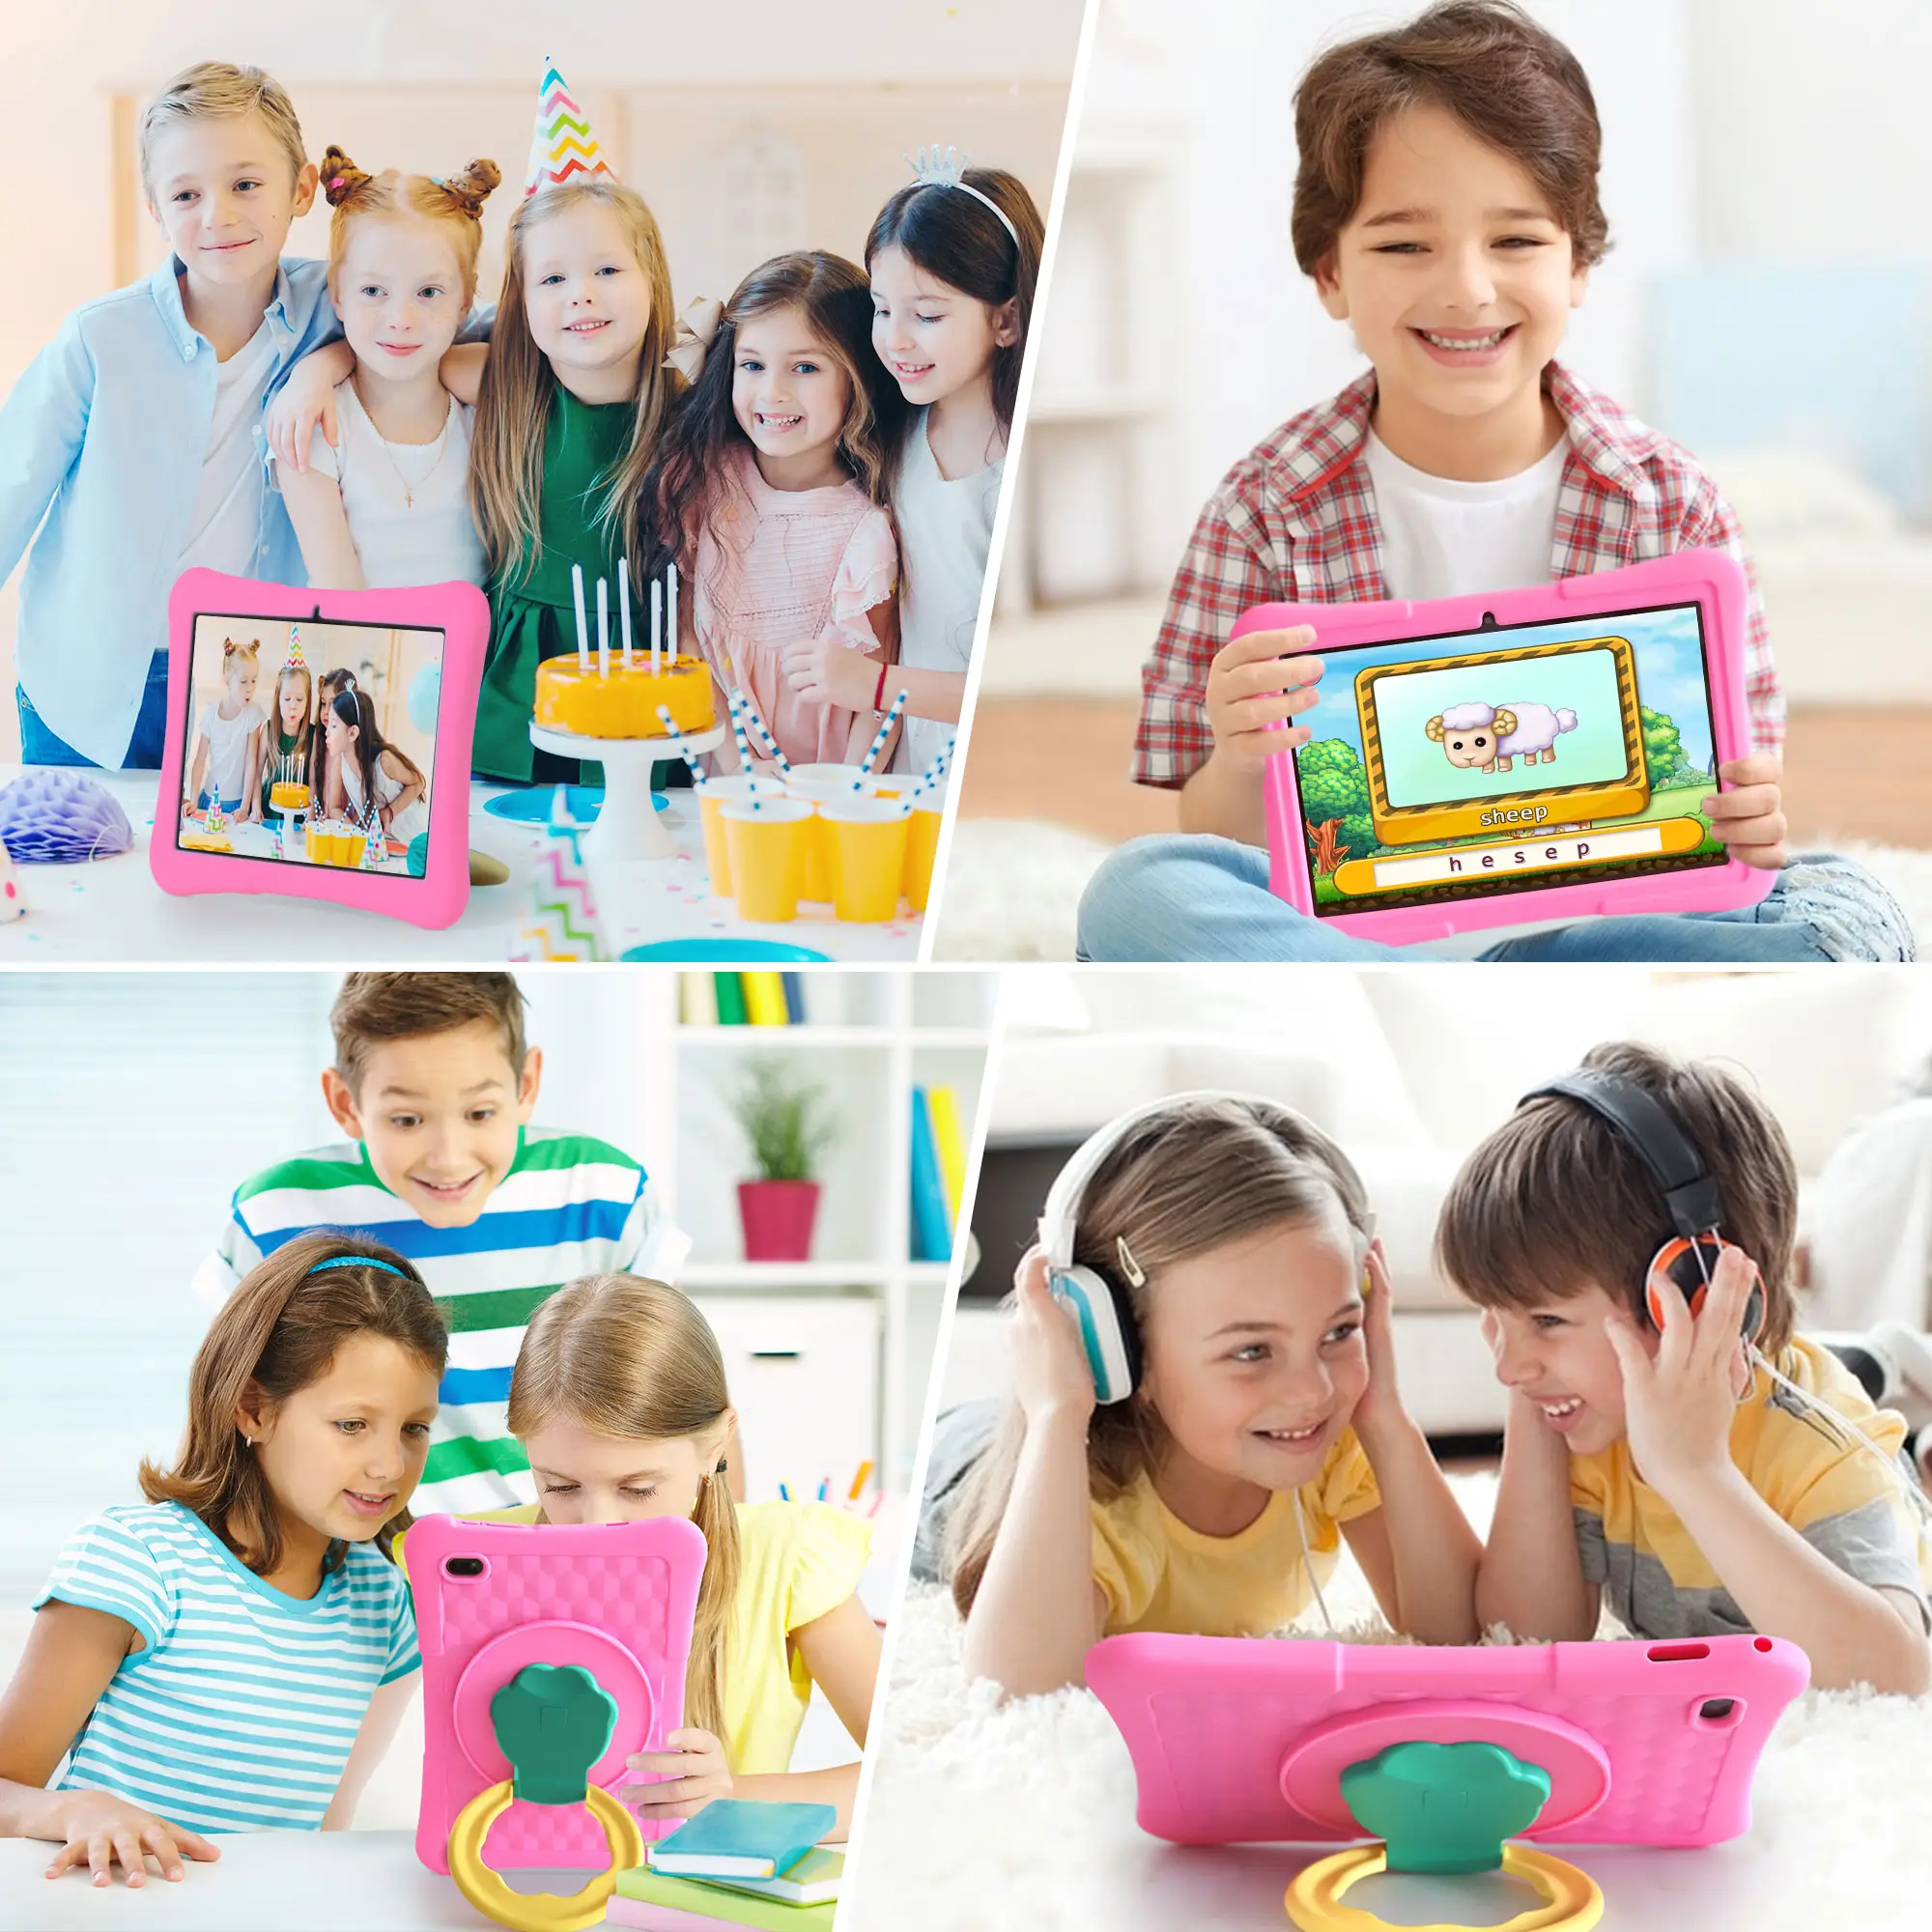 מחשב לוח לילדים Veidoo 10 אינץ' טאבלט אנדרואיד לילדים 8GB 4 הרחבת זיכרון RAM 128GB ROM wifi 6 טאבלט עם נרתיק עמיד בפני זעזועים